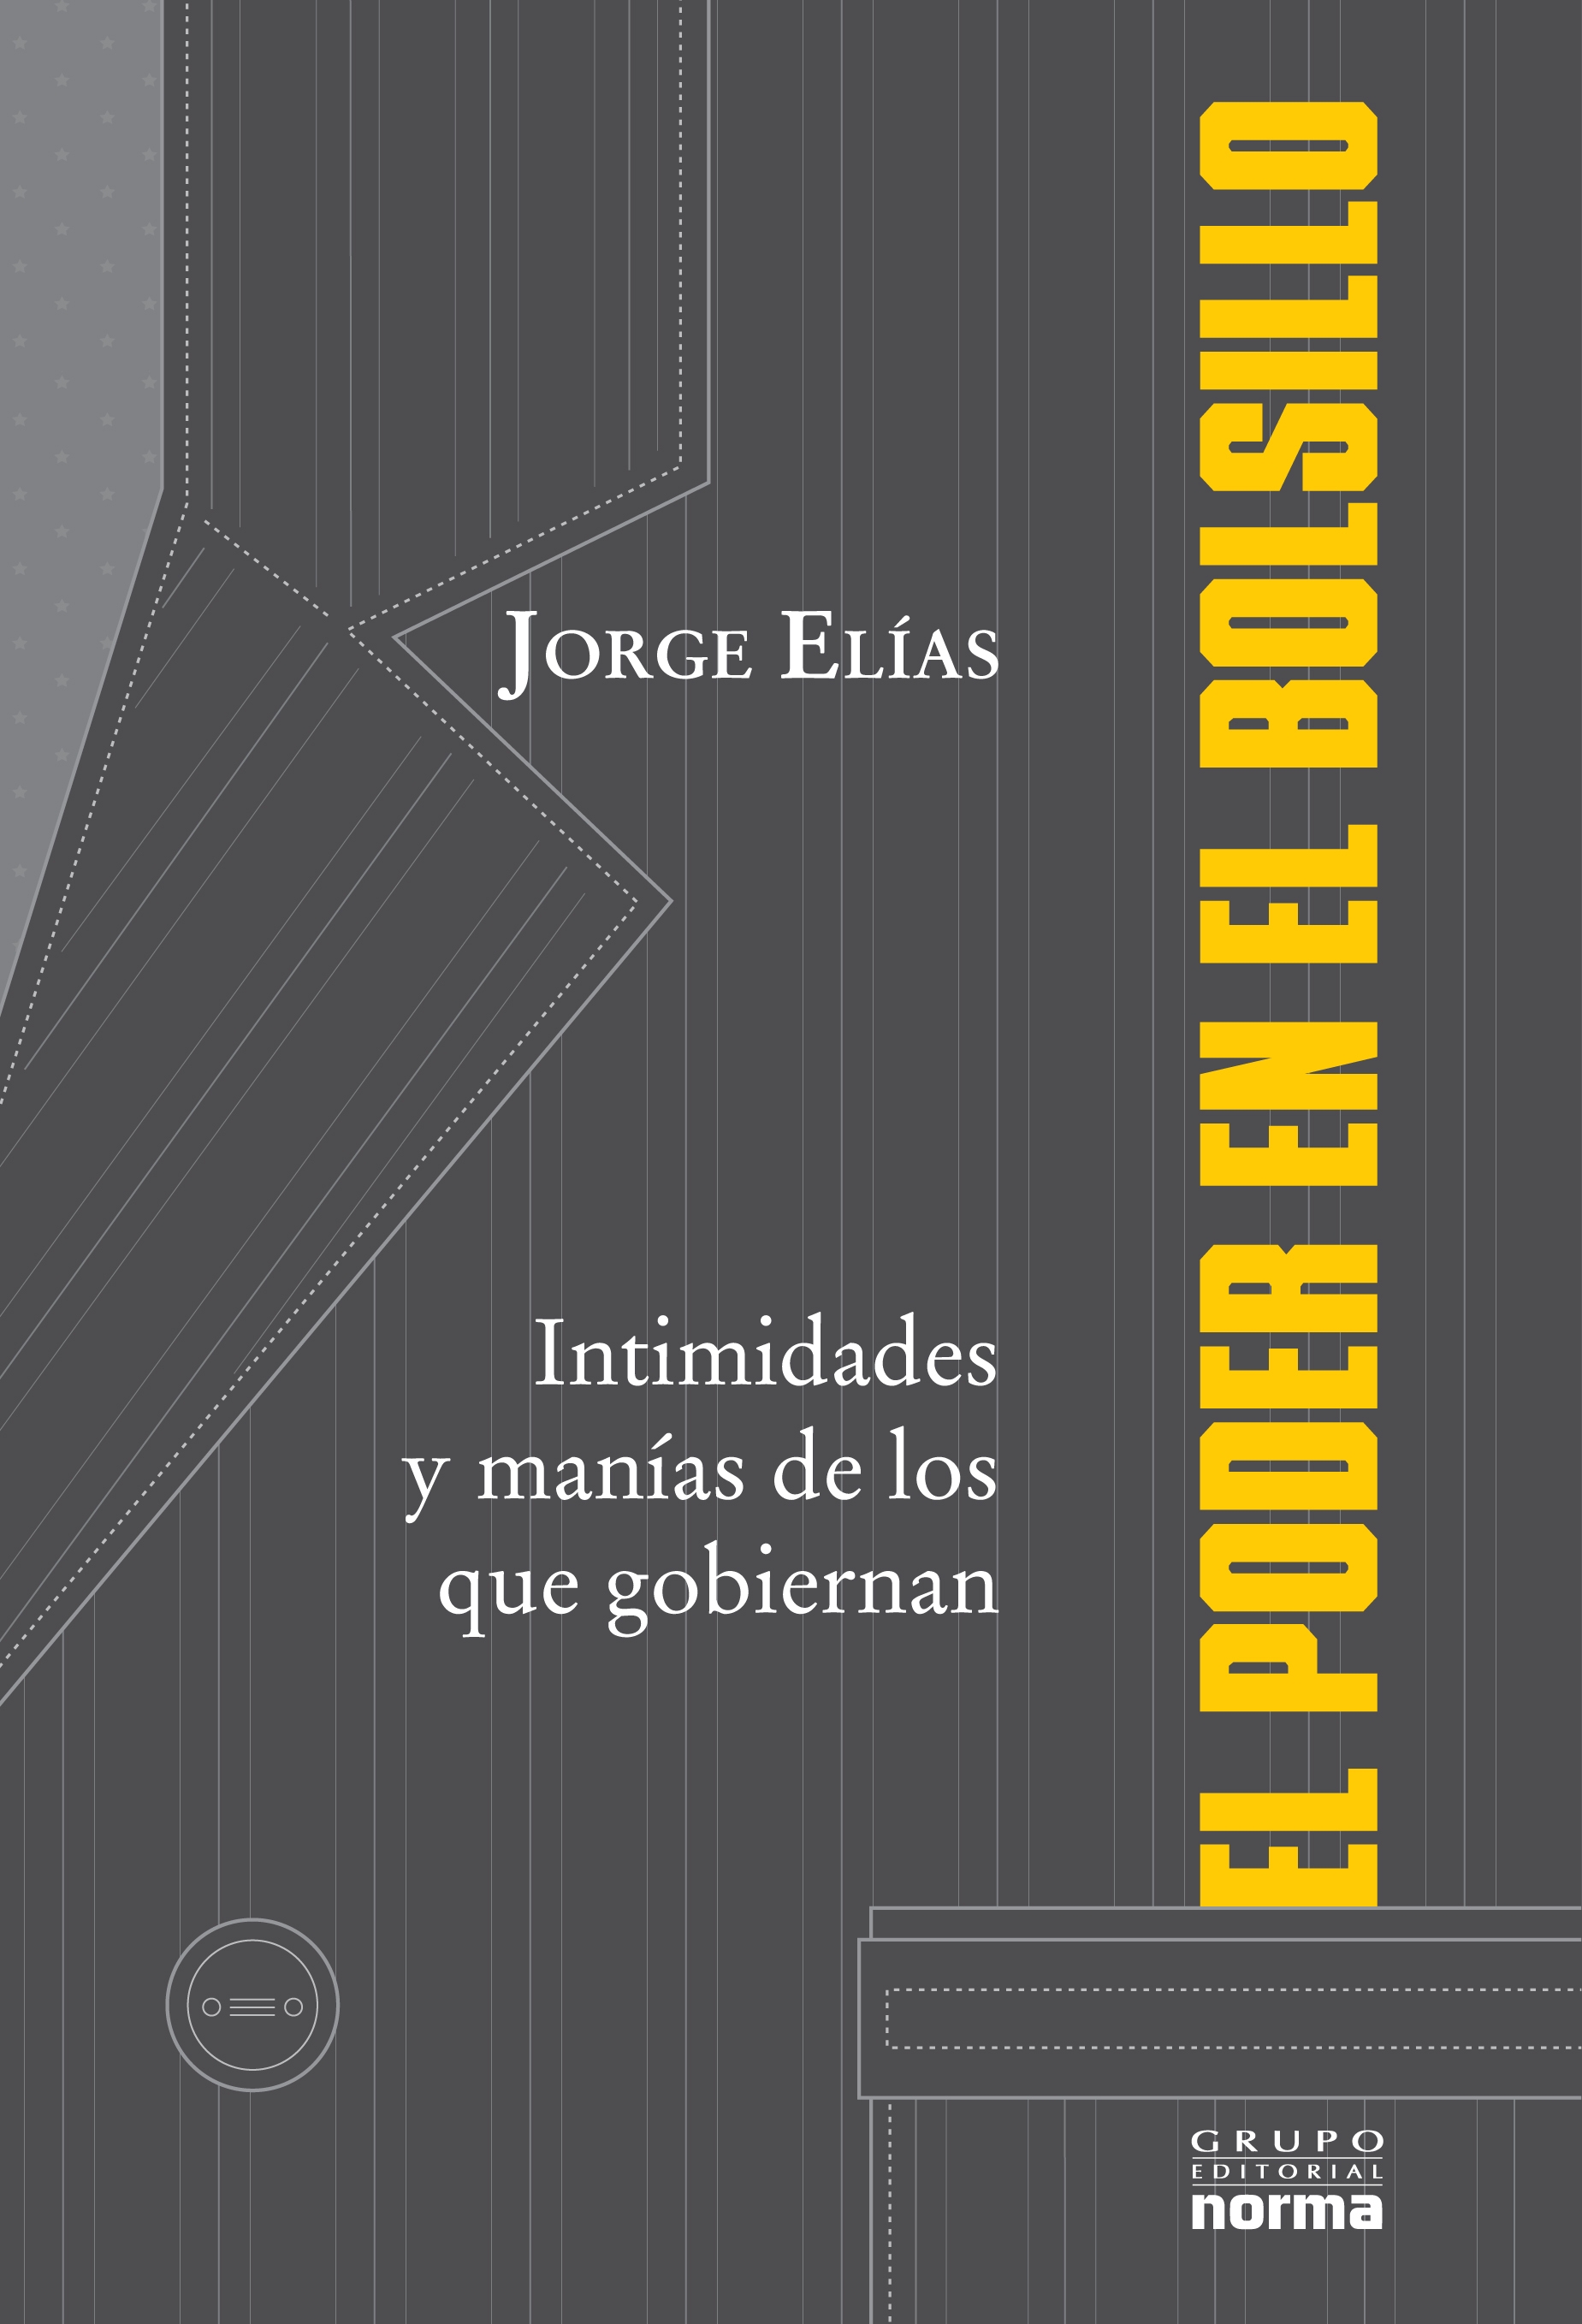 Jorge Elias - El poder en el bolsillo (Grupo Editorial Norma, Argentina)